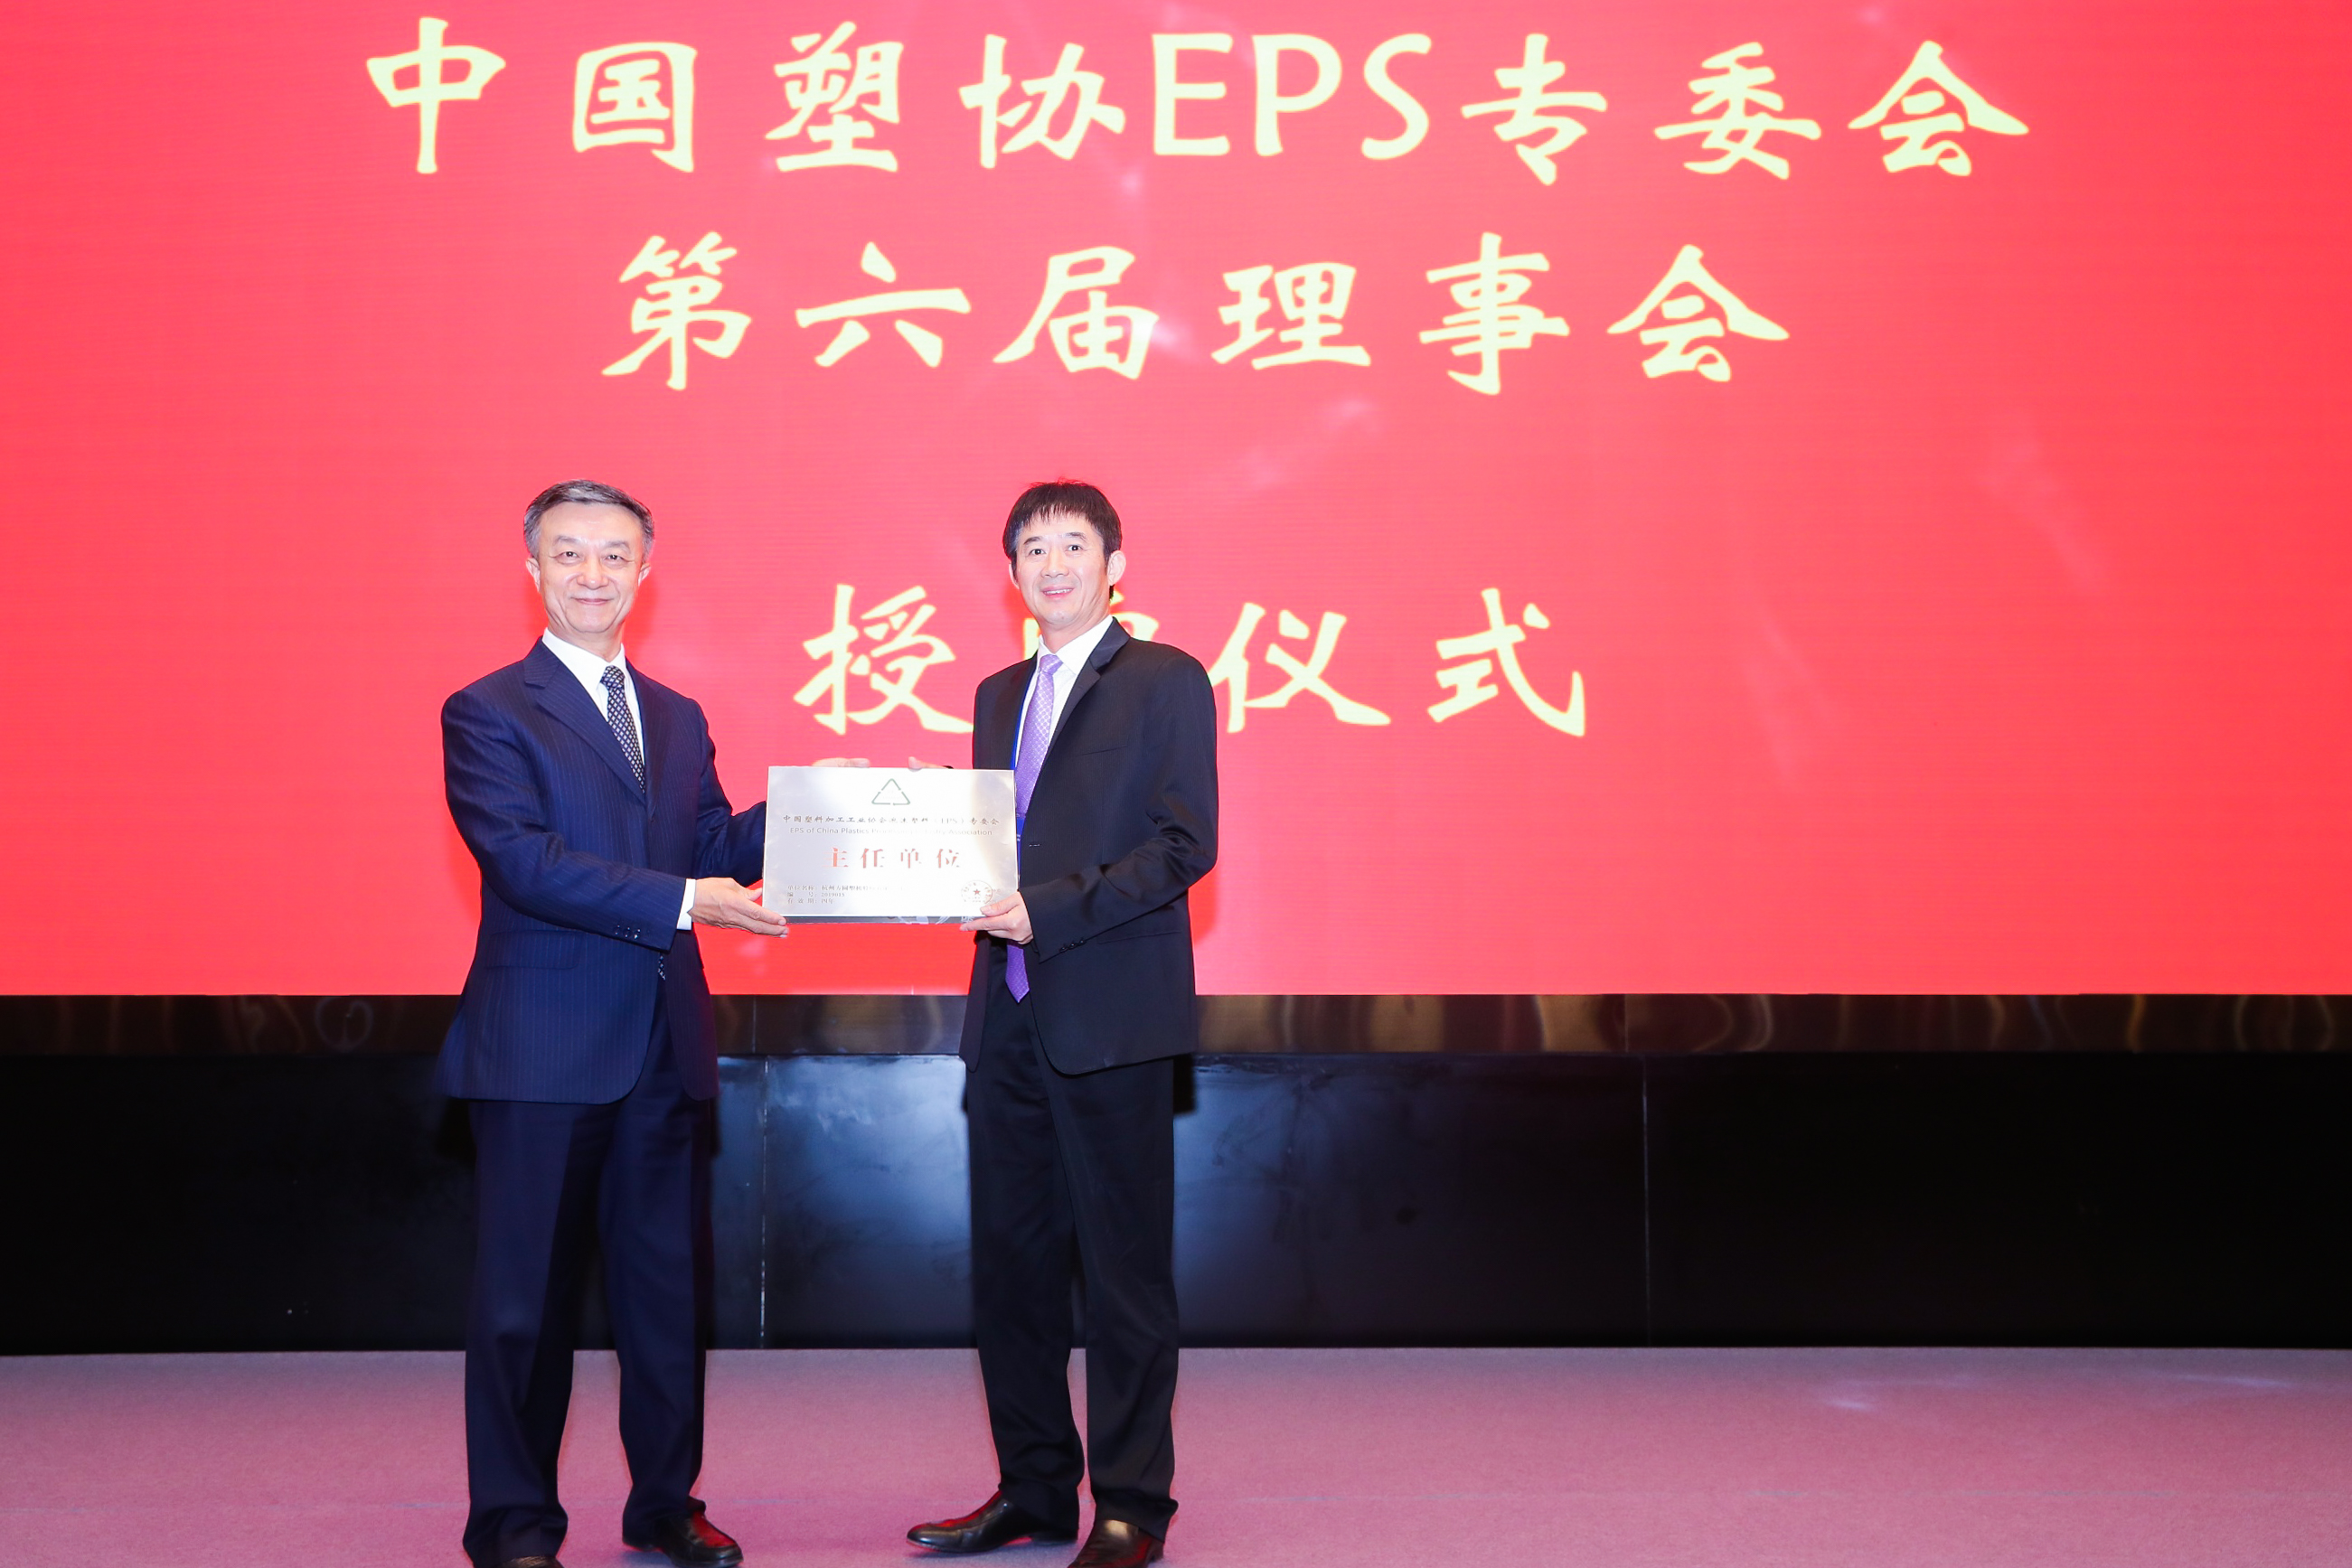 Yuan Guoqing先生，Fangyuan company的所有者，自2019年起被授予中国塑料加工工业协会EPS委员会主席。